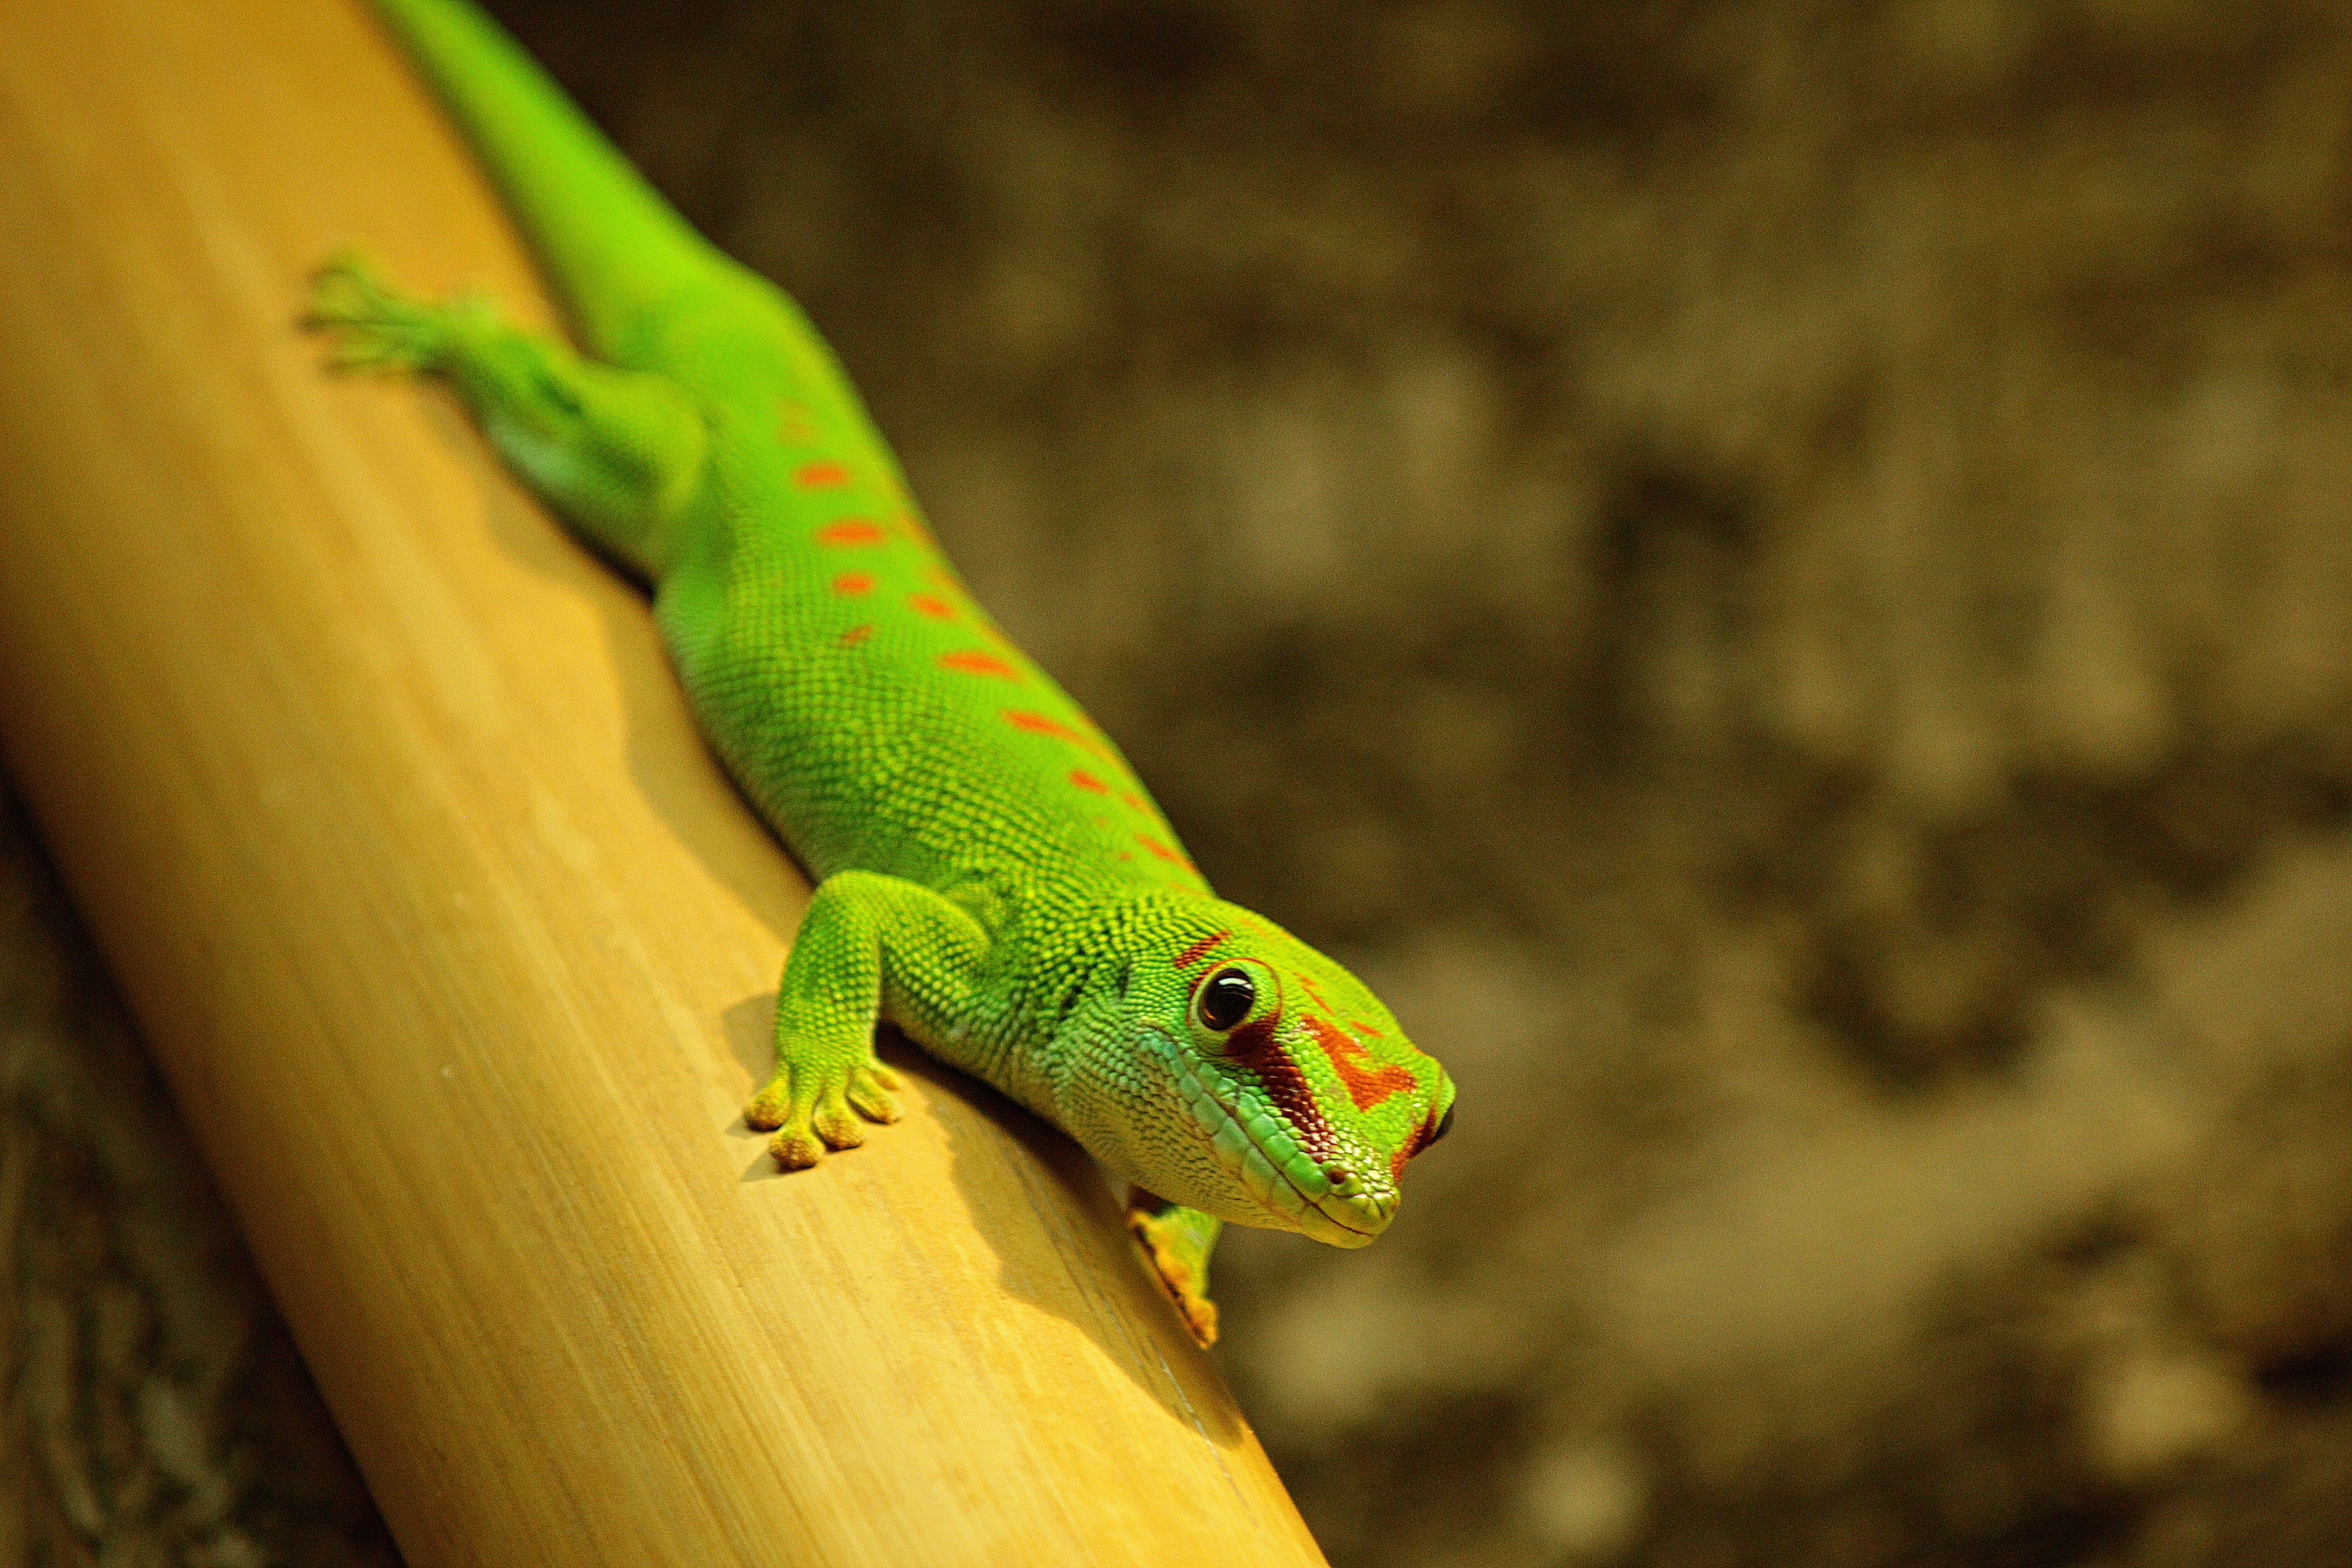 Großer Madagaskar-Taggeckos wohnen ausschließlich auf Madagaskar und einer benachbarten Insel.